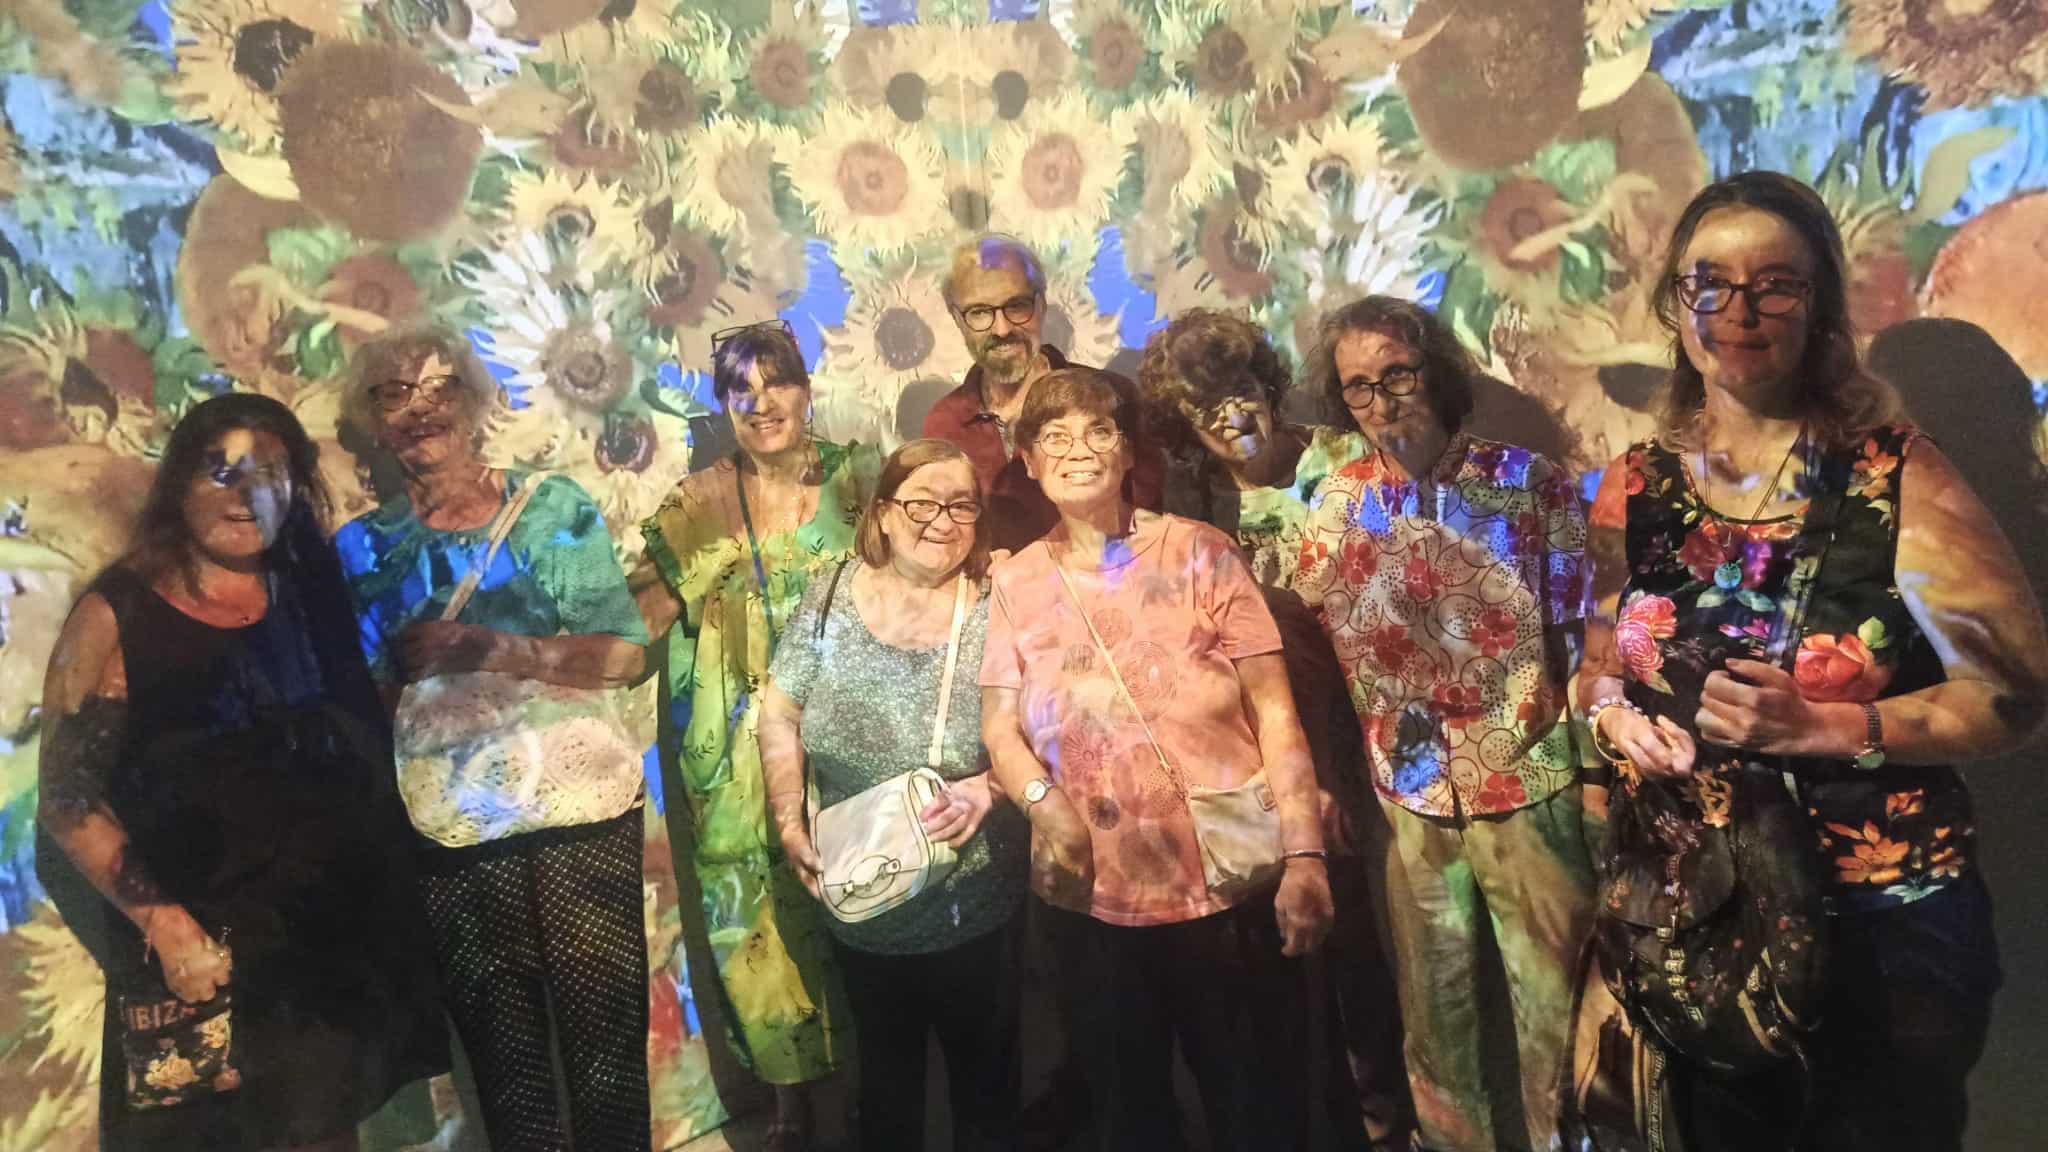 Gruppo di persone su uno sfondo di un quadro di Van Gogh con una luce colorata sopra di loro